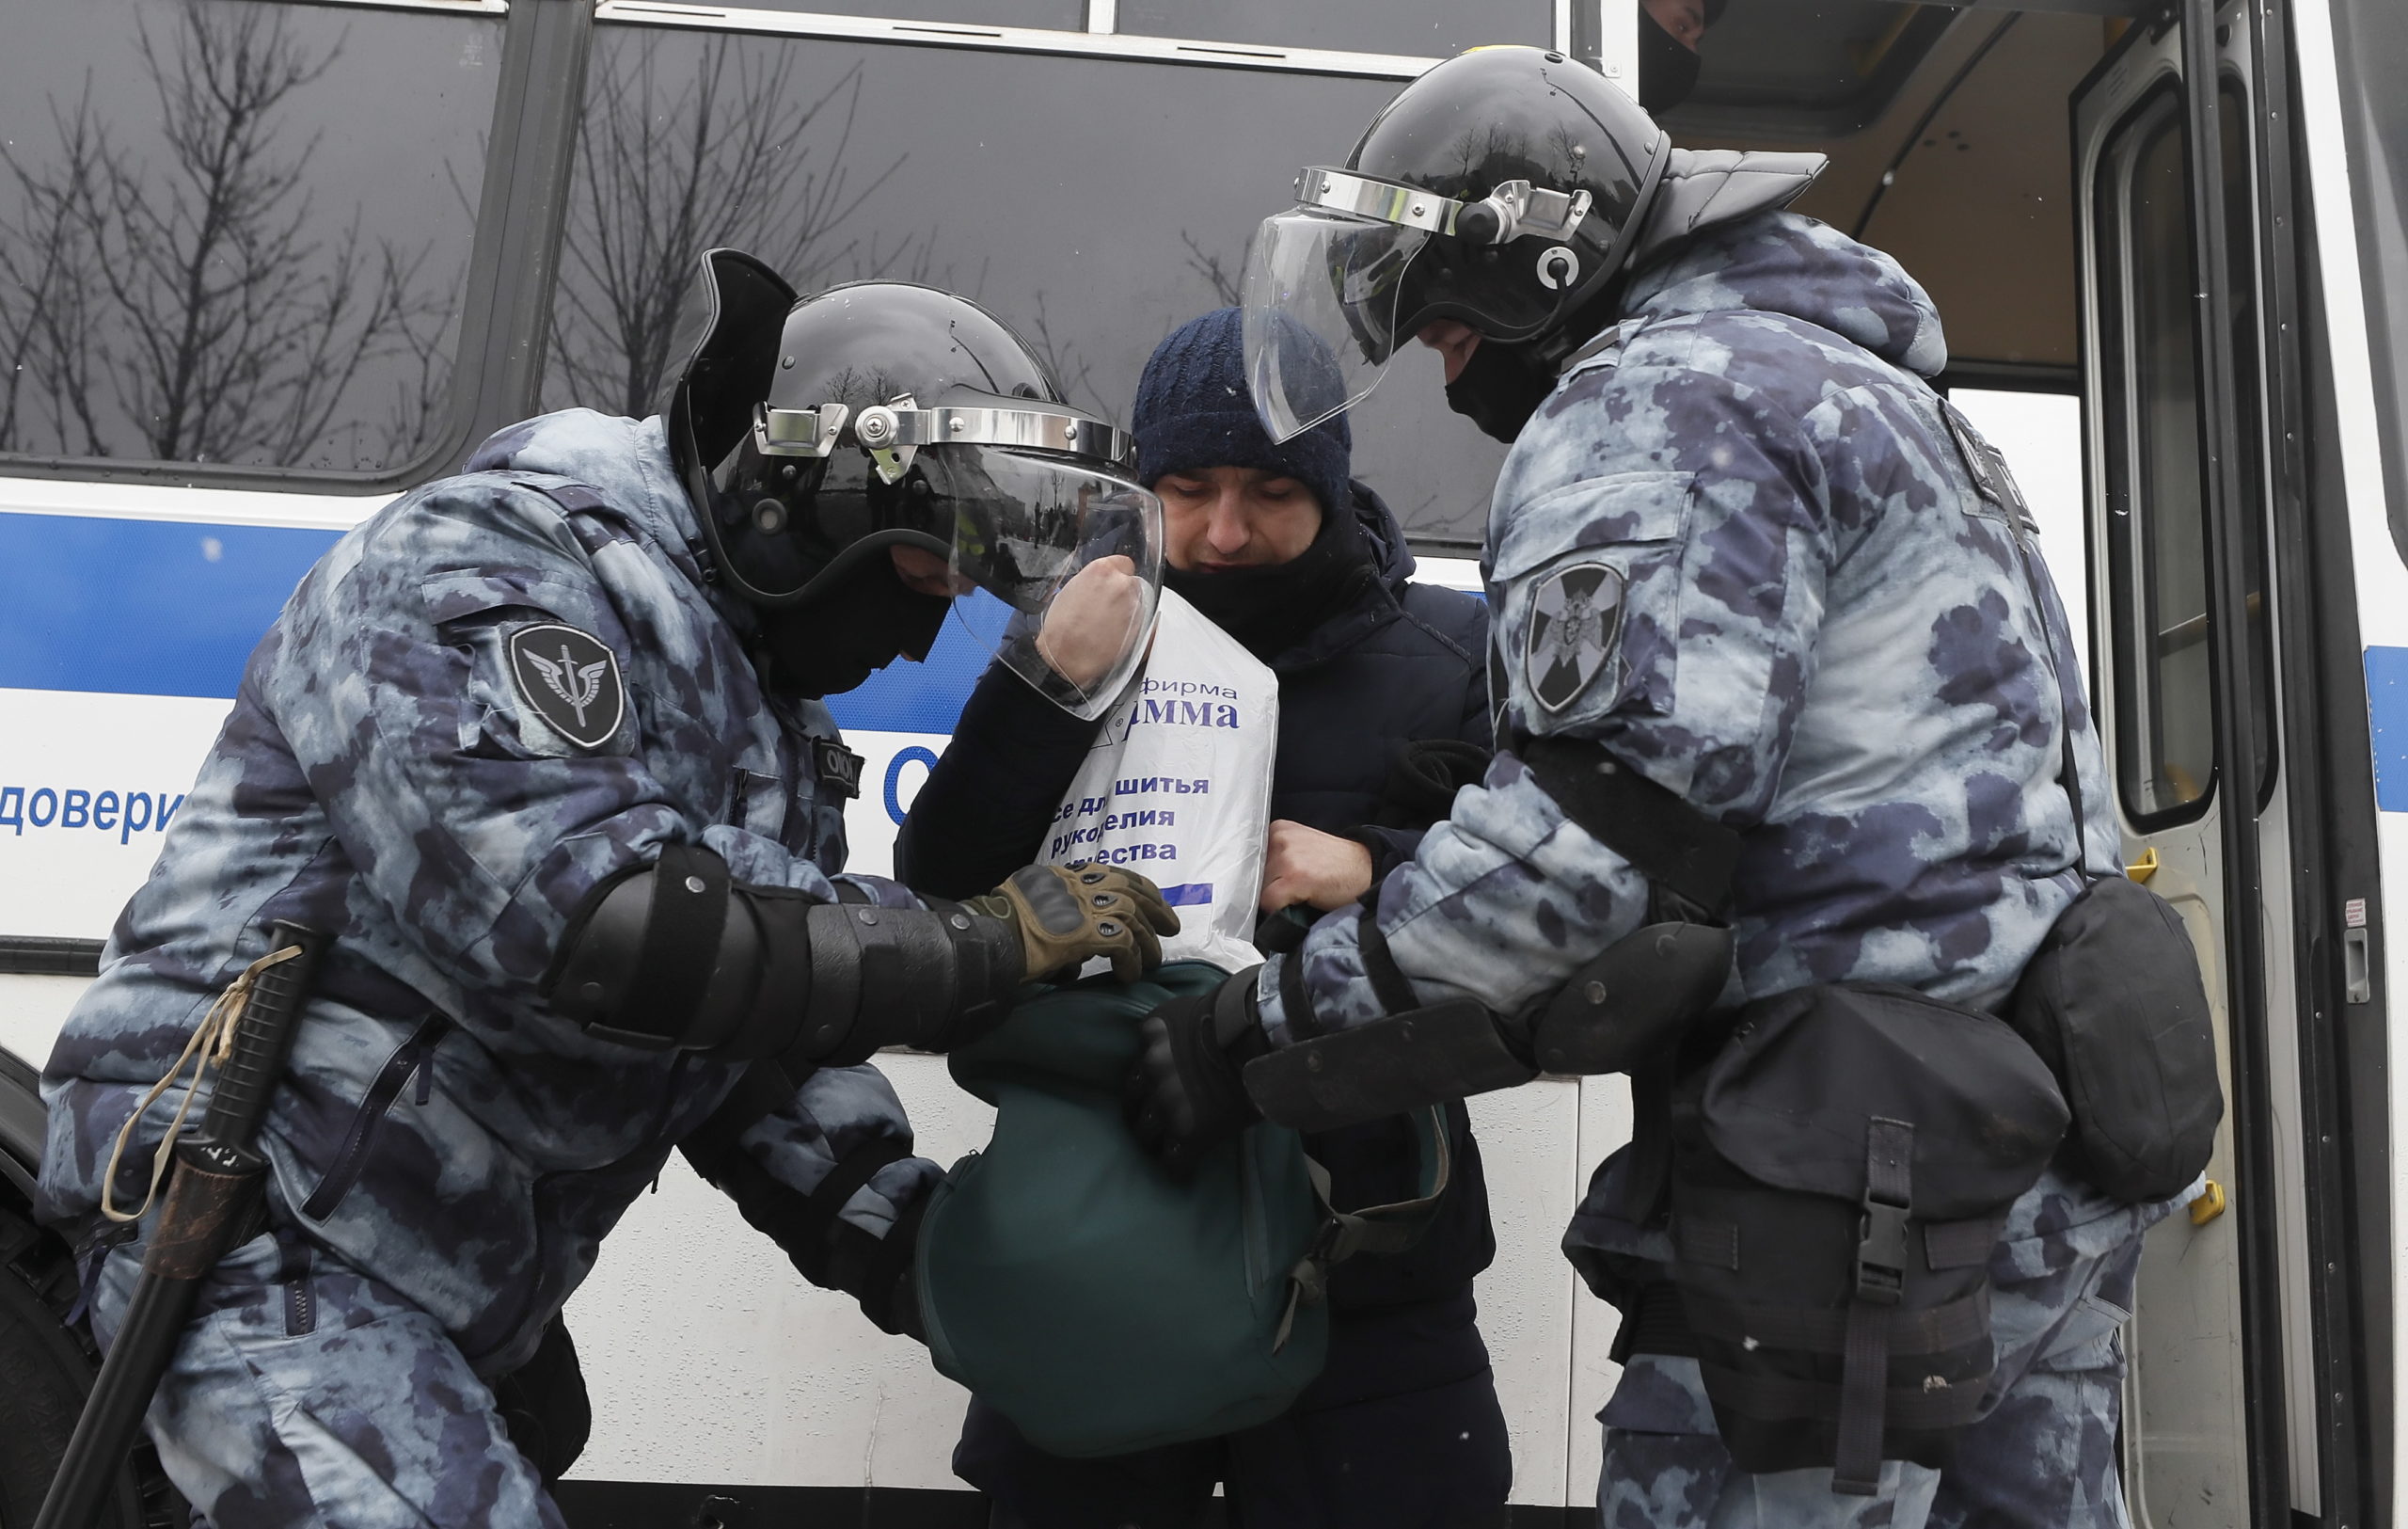 Βράζει η Μόσχα: Εκατοντάδες συλλήψεις σε «παράνομη» διαδήλωση για το Ναβάλνι(φωτό - βίντεο)